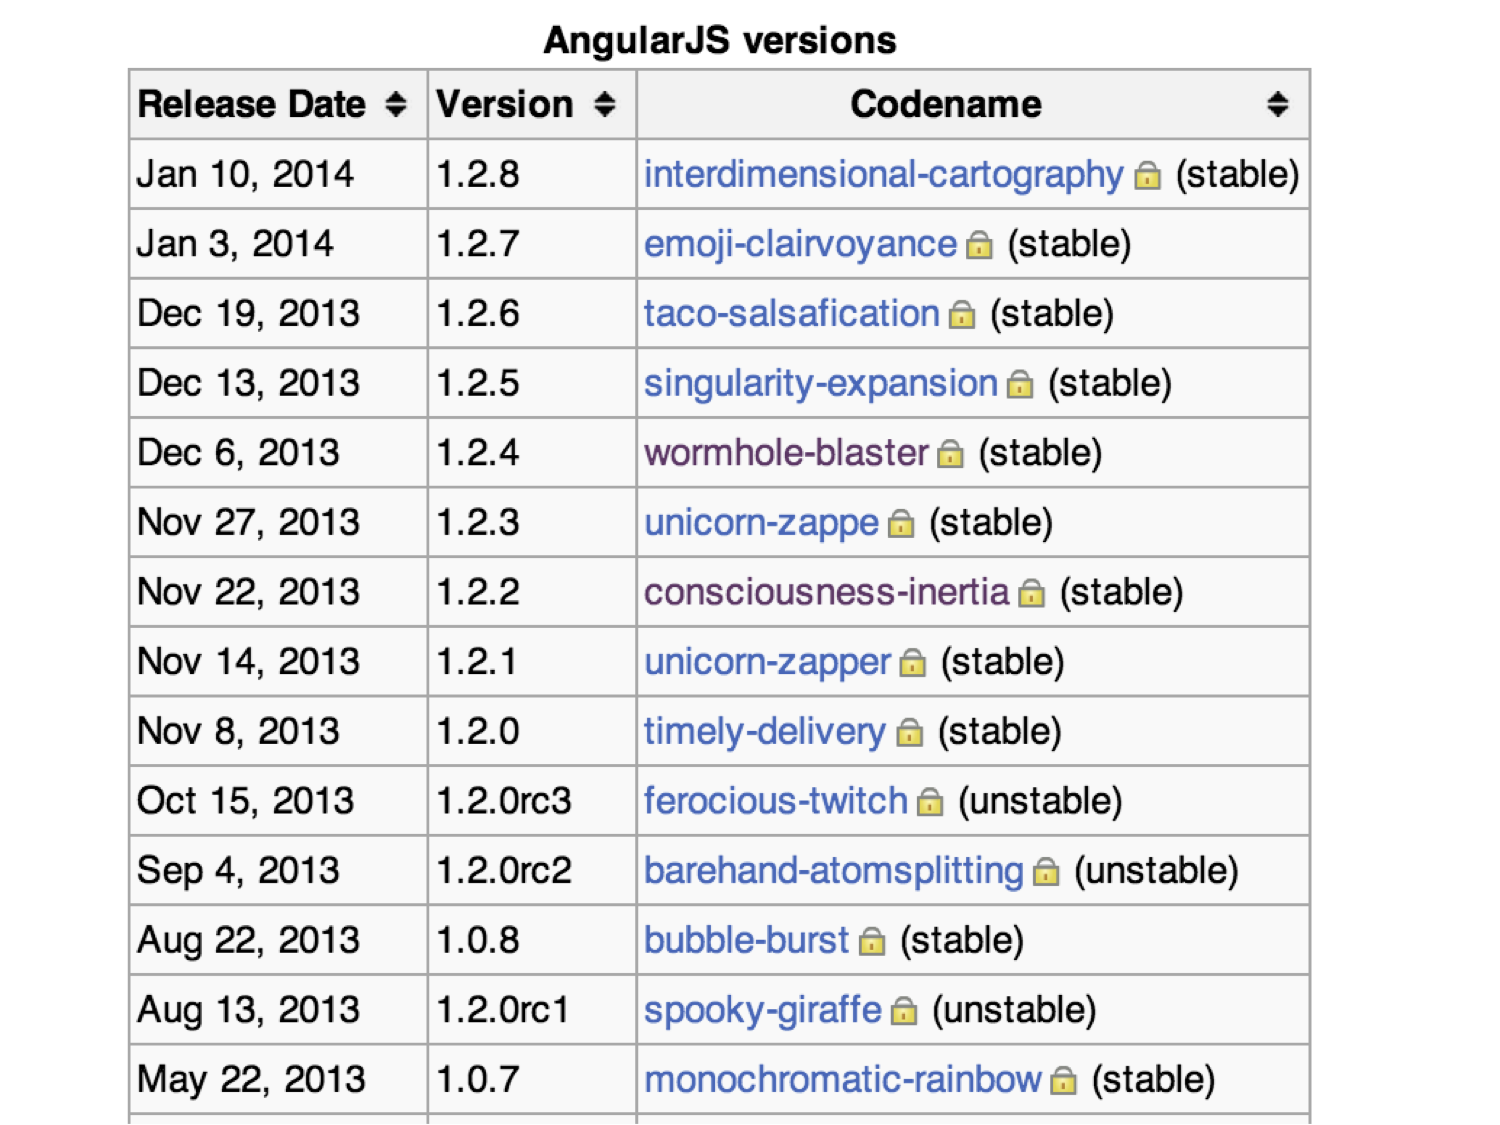 AngularJS Wikipedia page